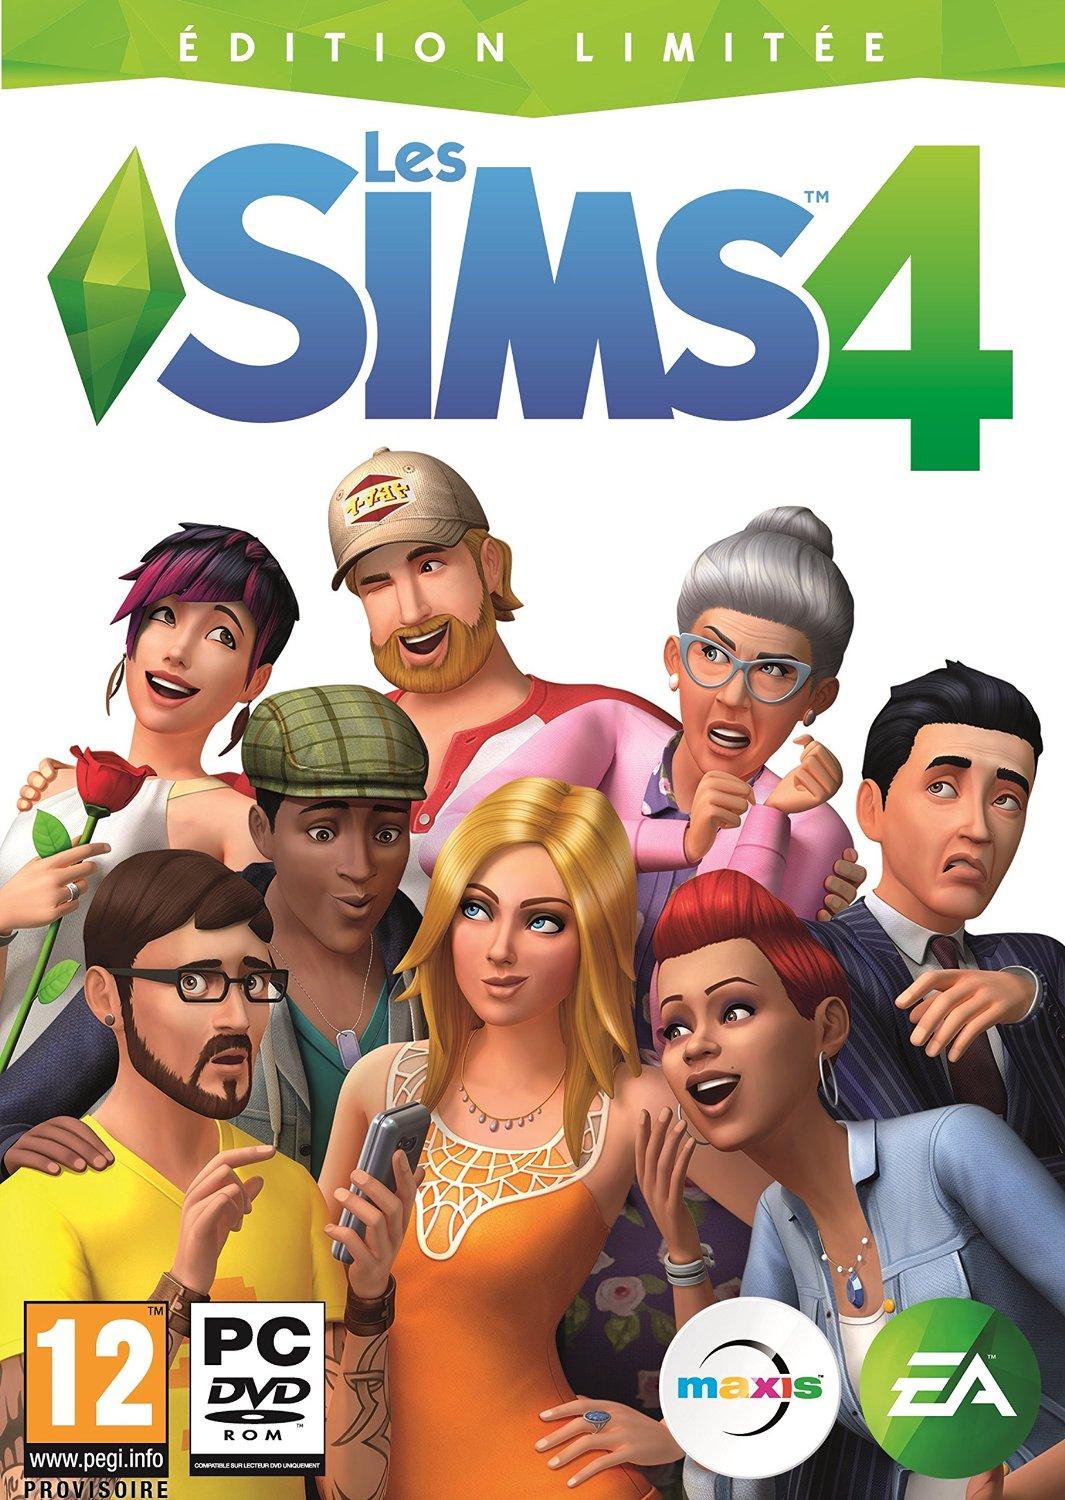 Avant de lire ma critique, je tiens à dire que j'adore les Sims.